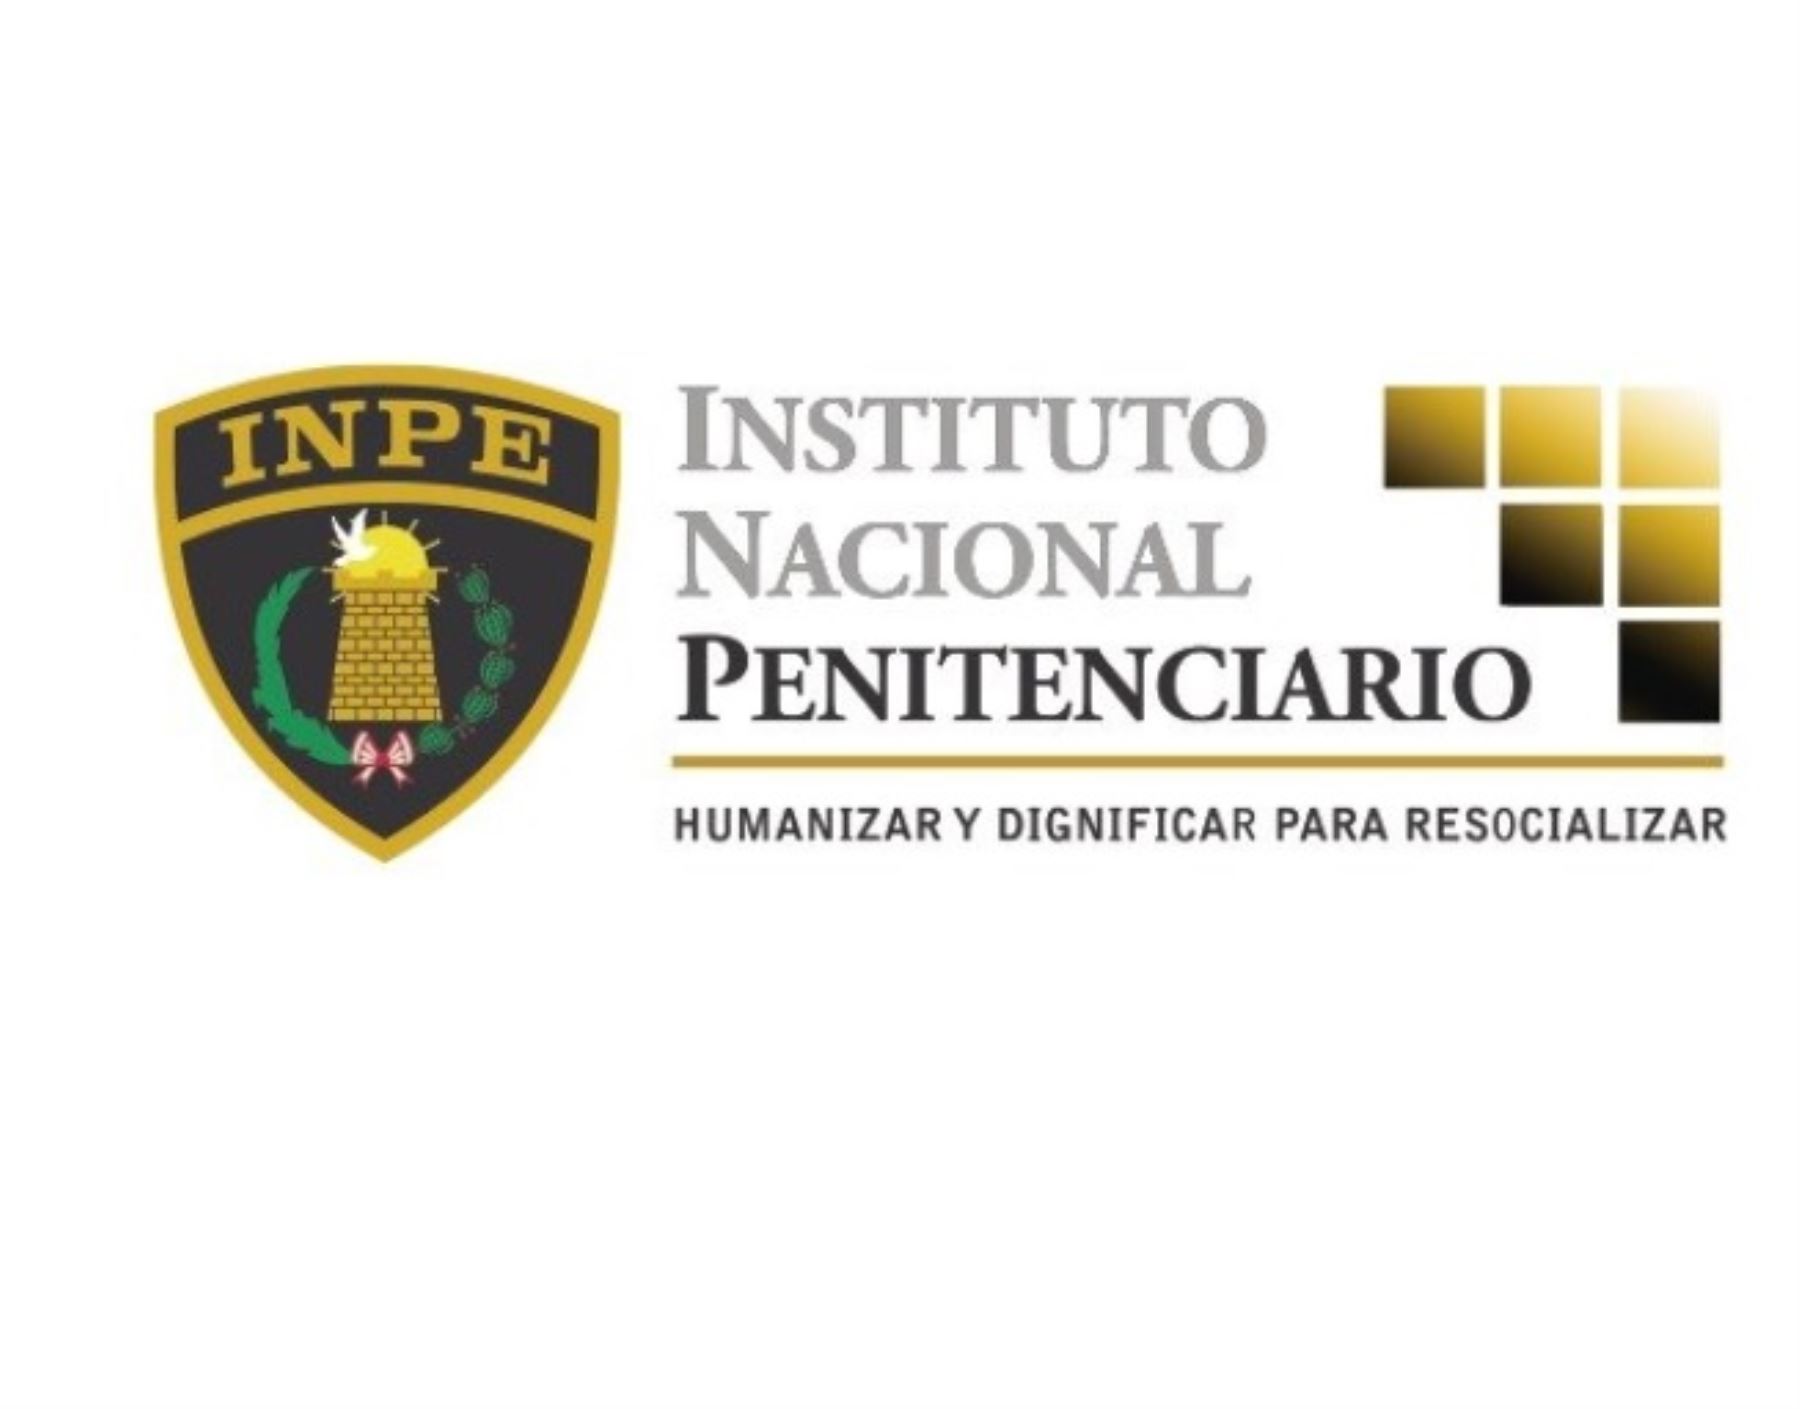 Instituto Nacional Penitenciario (Inpe).